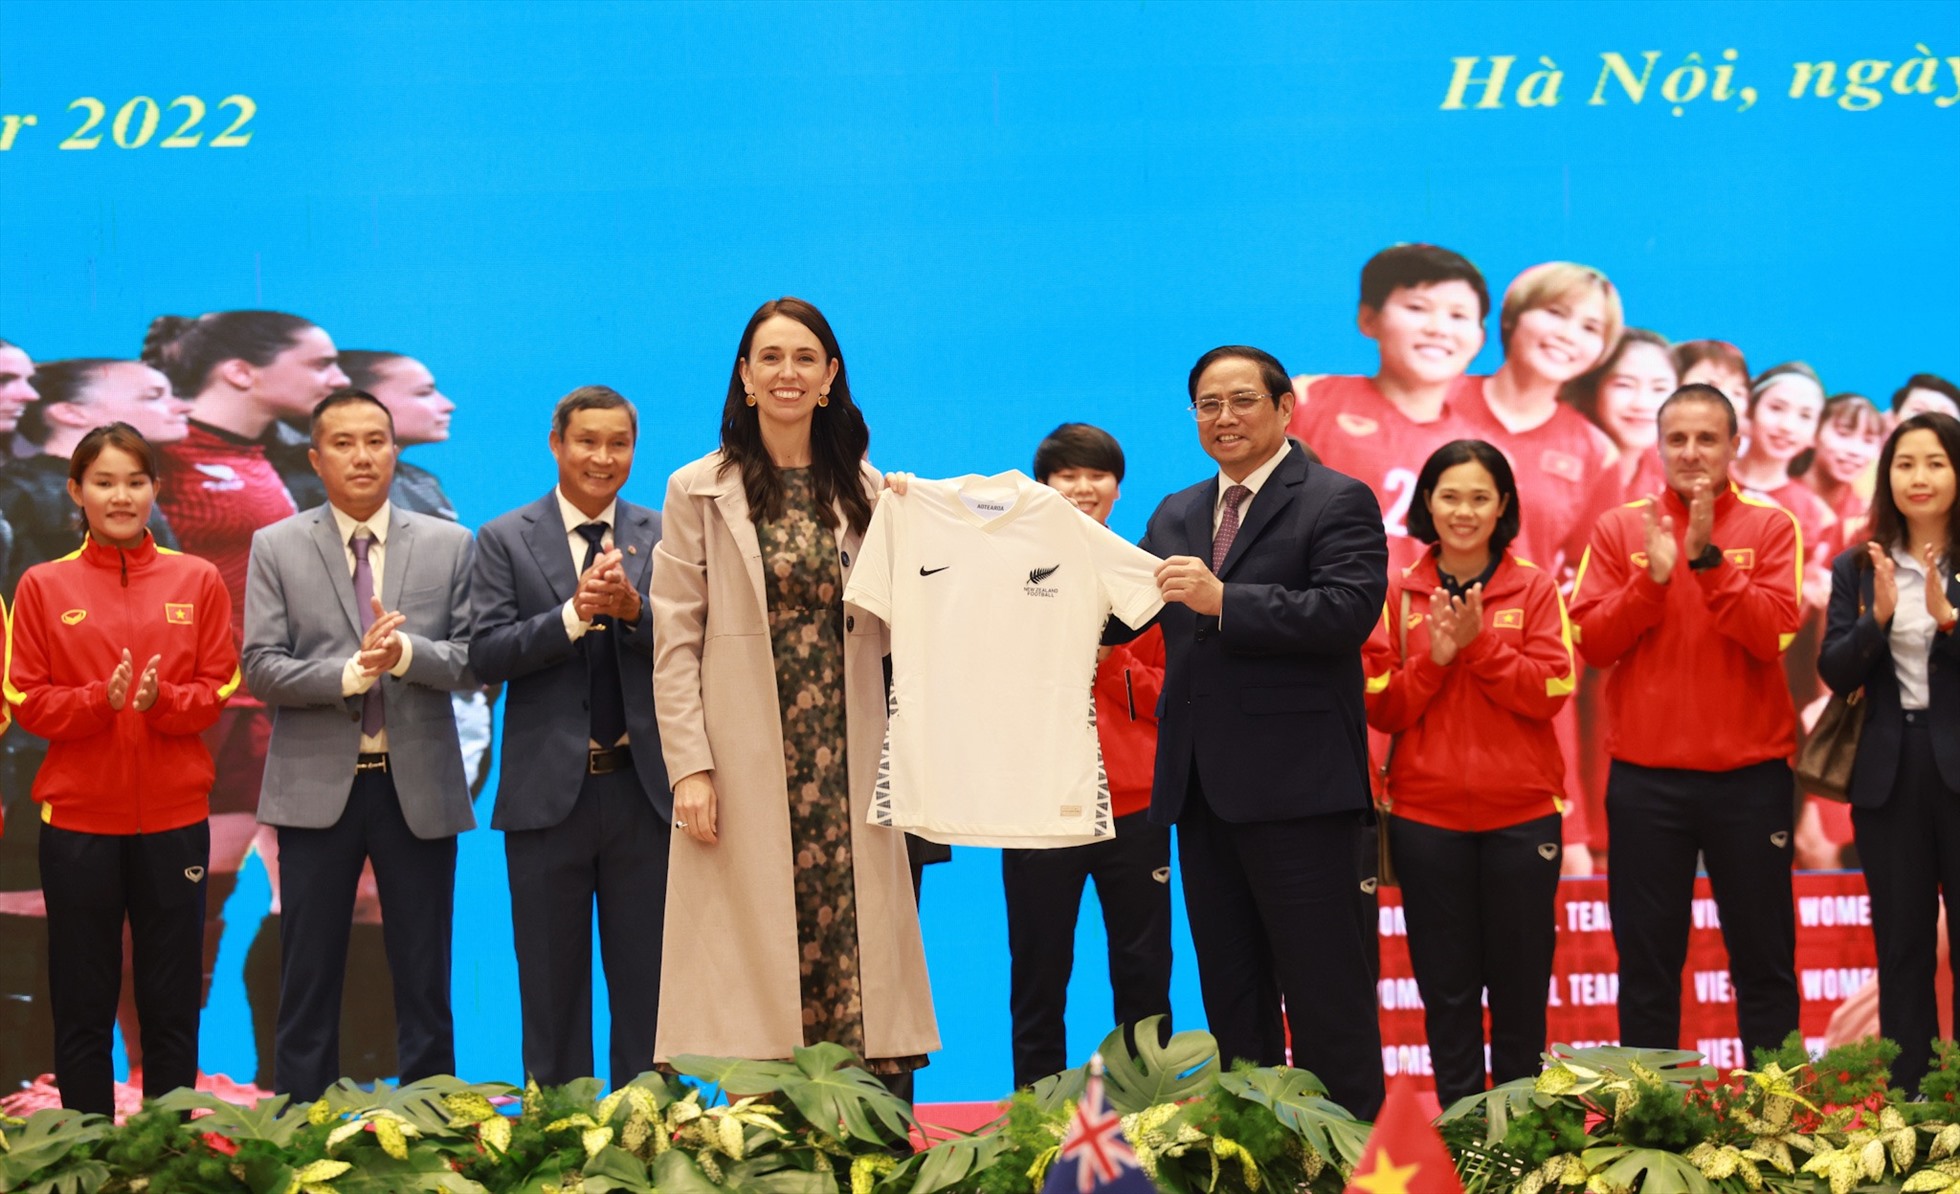 Thủ tướng New Zealand Jacinda Ardern tặng Thủ tướng Phạm Minh Chính chiếc áo thi đấu của Đội tuyển bóng đá nữ New Zealand. Ảnh: Hải Nguyễn